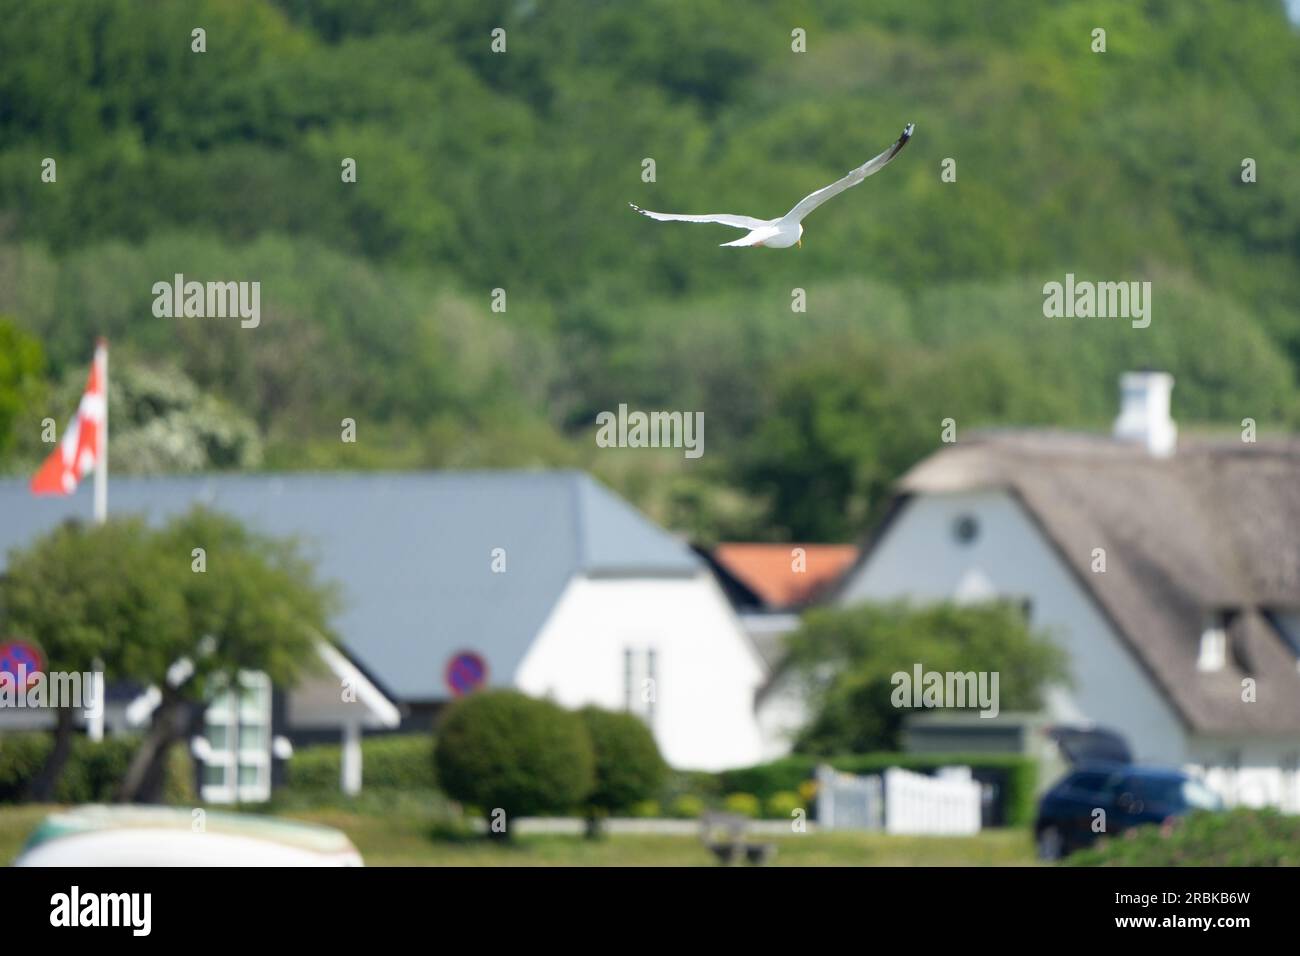 Mouette en vol au-dessus des maisons d'un petit village danois sur la côte de la mer Baltique avec un drapeau danois visible sur un poteau en arrière-plan Banque D'Images